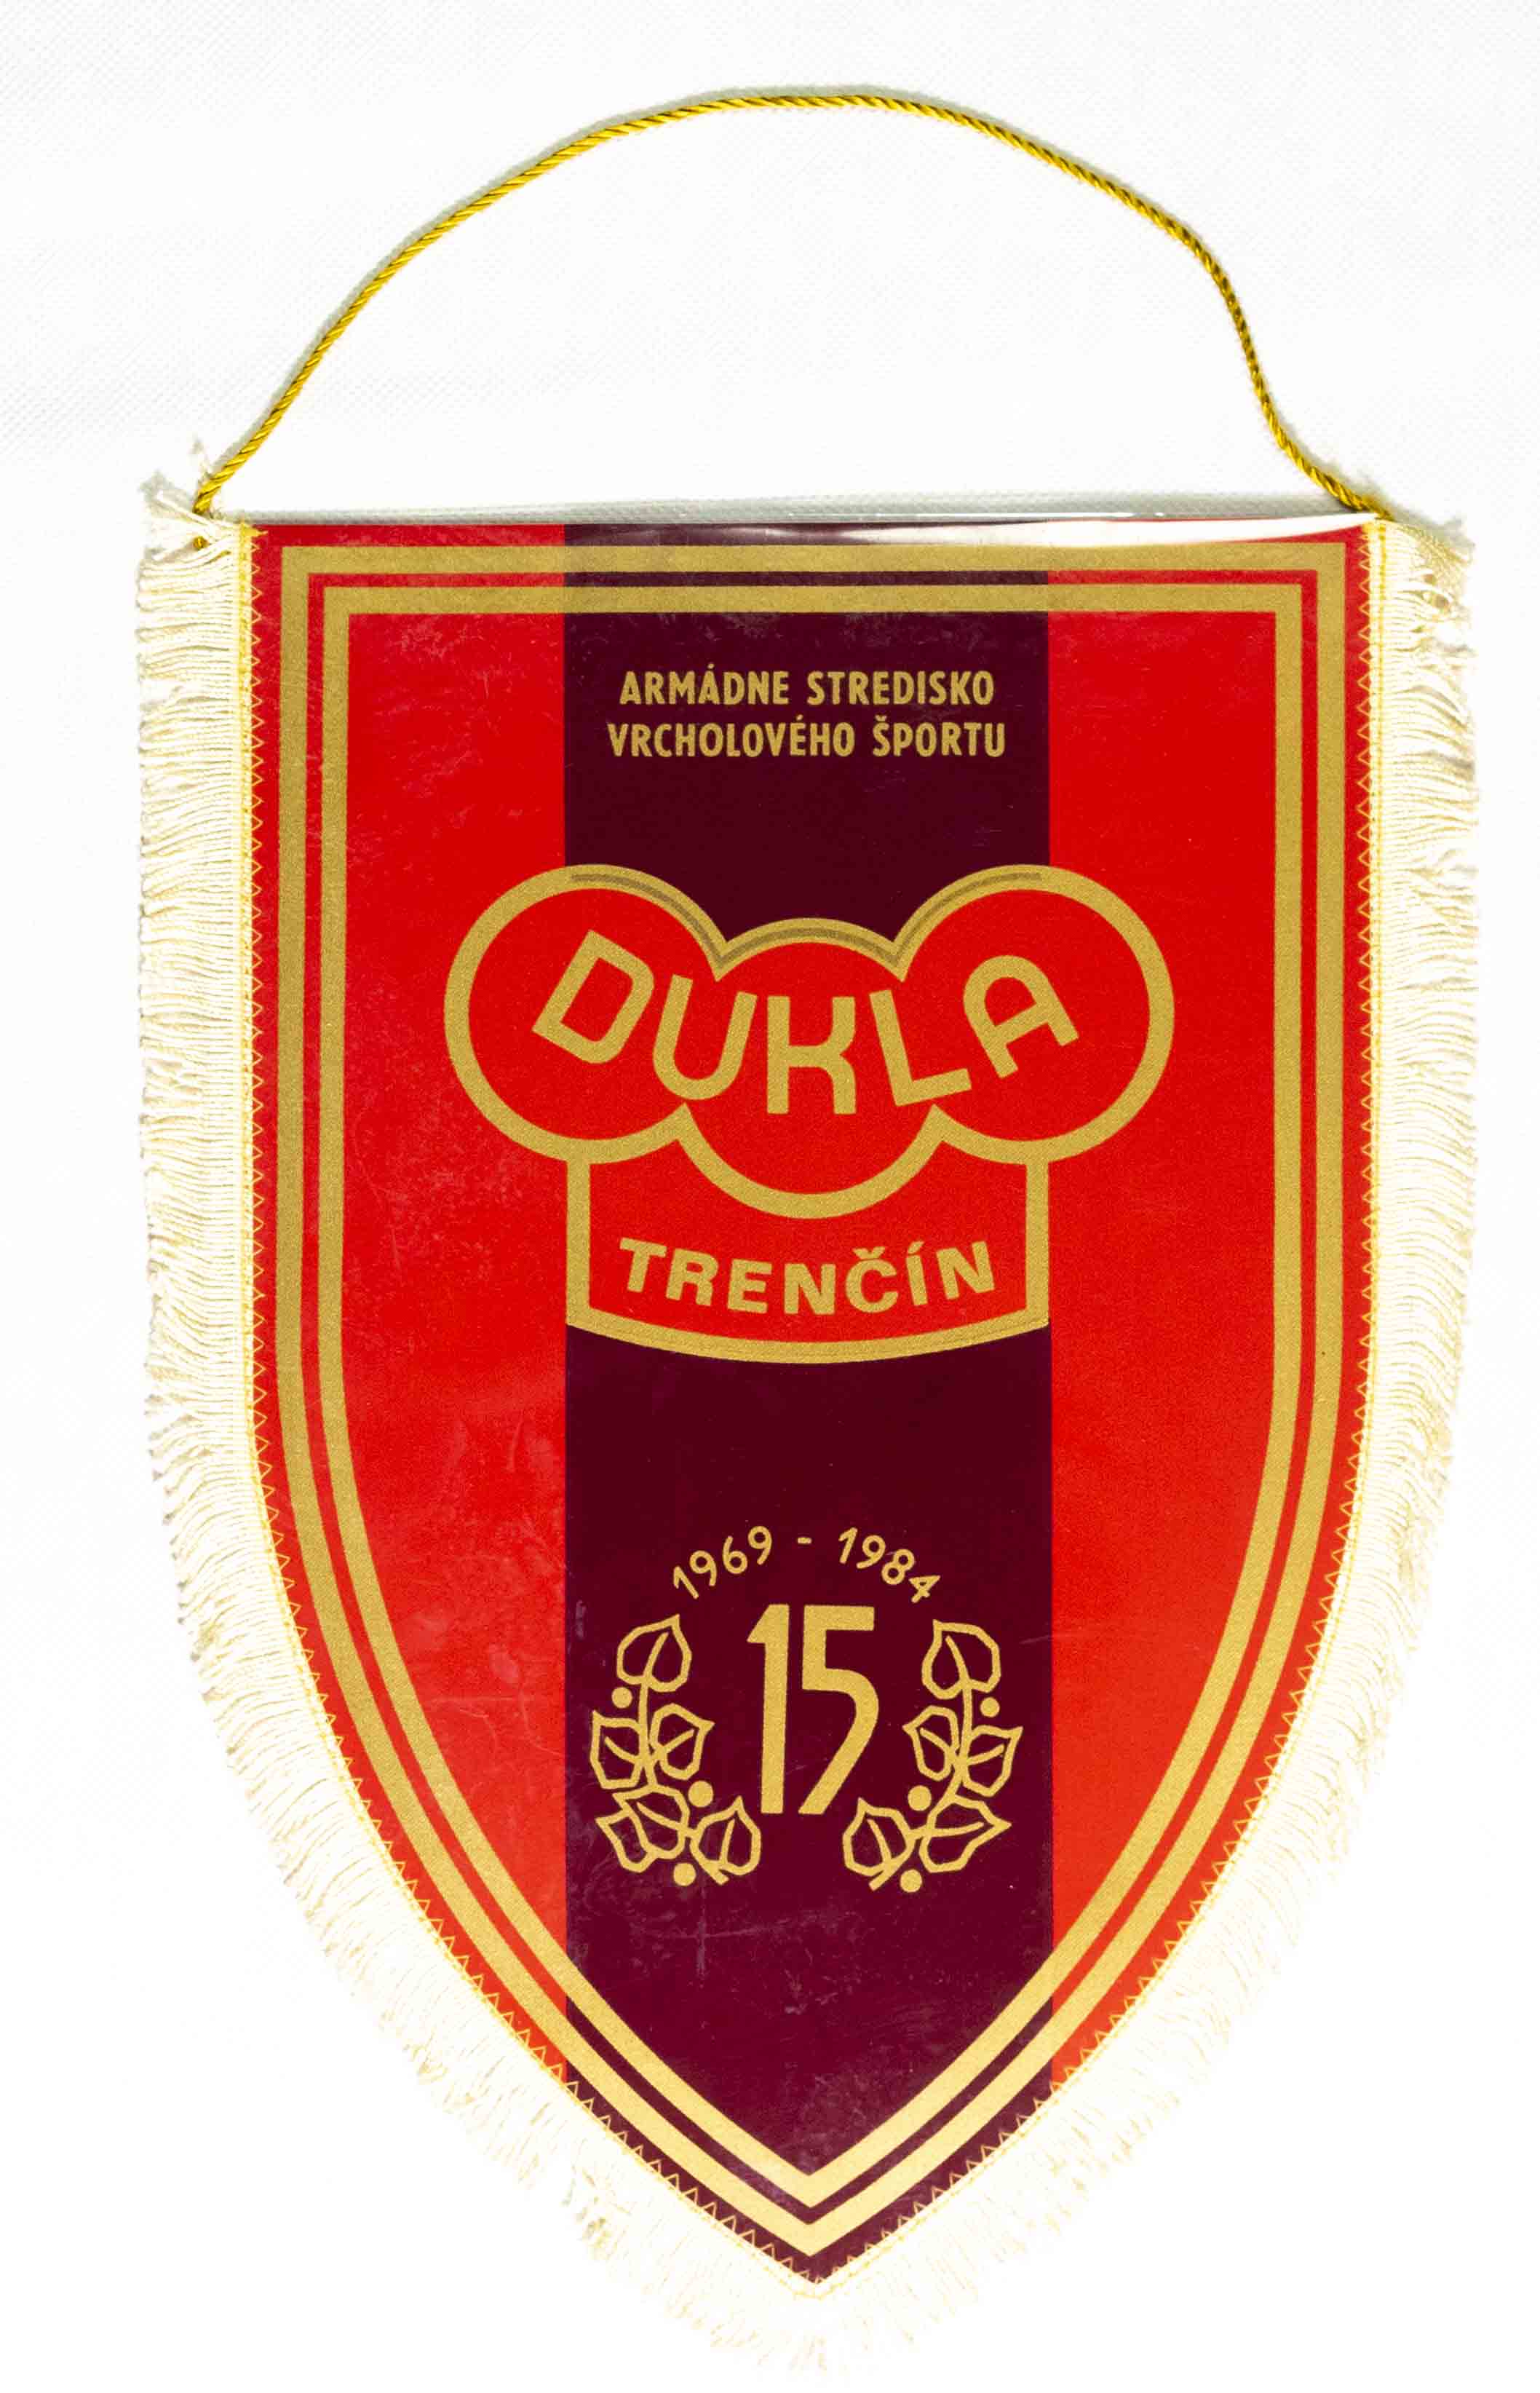 Klubová vlajka MAXI, Dukla Trenčín, 15 let, 1969-1984